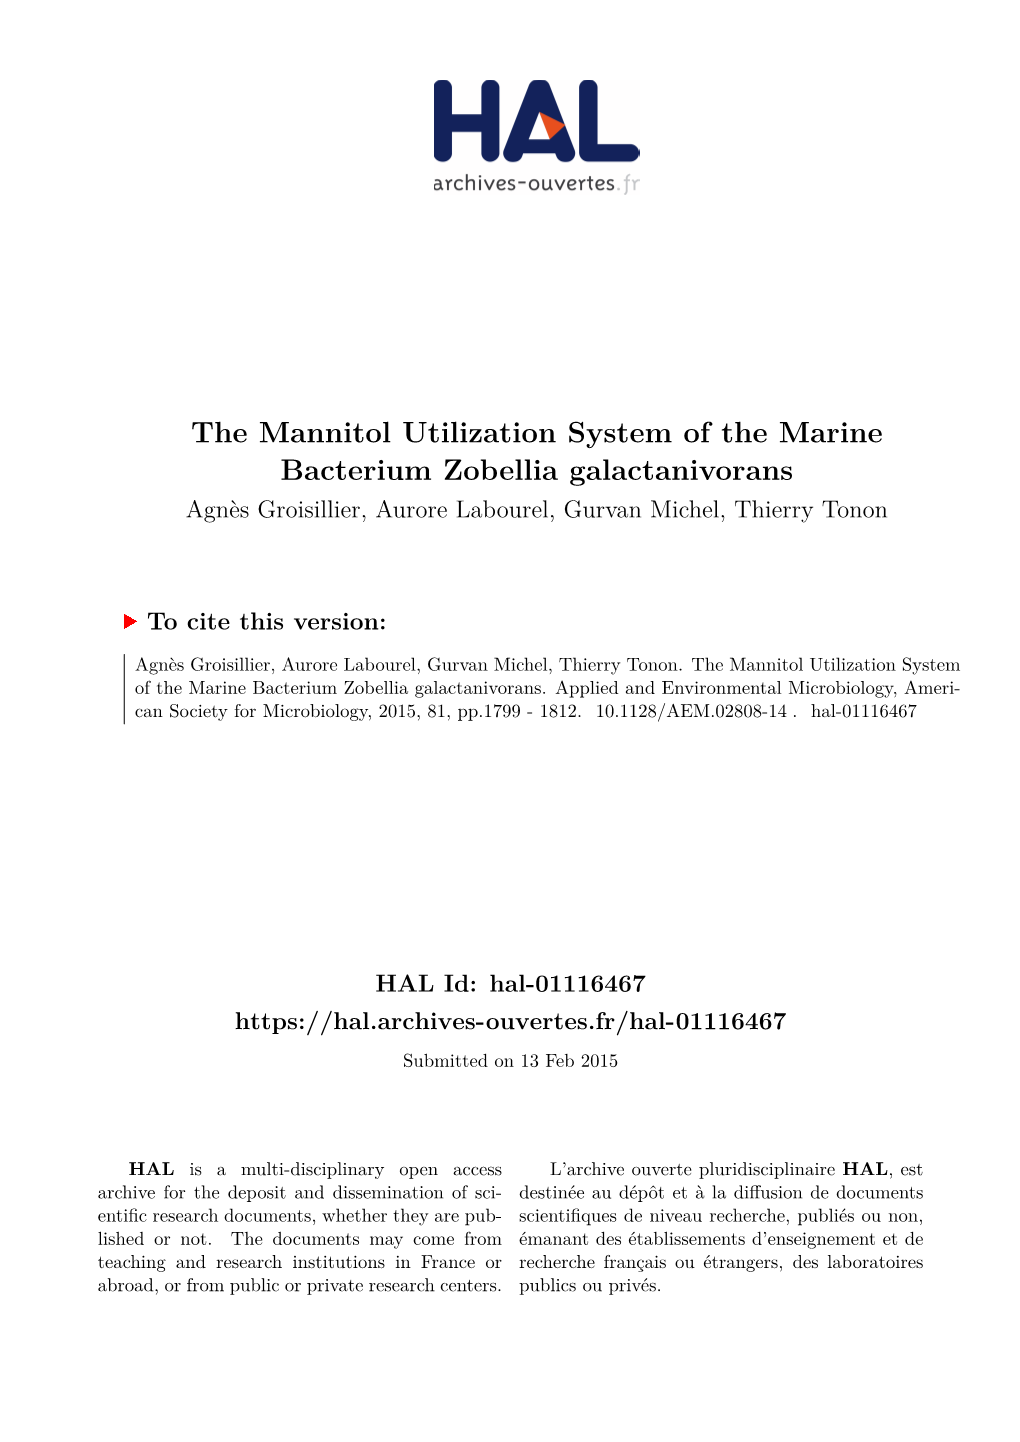 The Mannitol Utilization System of the Marine Bacterium Zobellia Galactanivorans Agnès Groisillier, Aurore Labourel, Gurvan Michel, Thierry Tonon